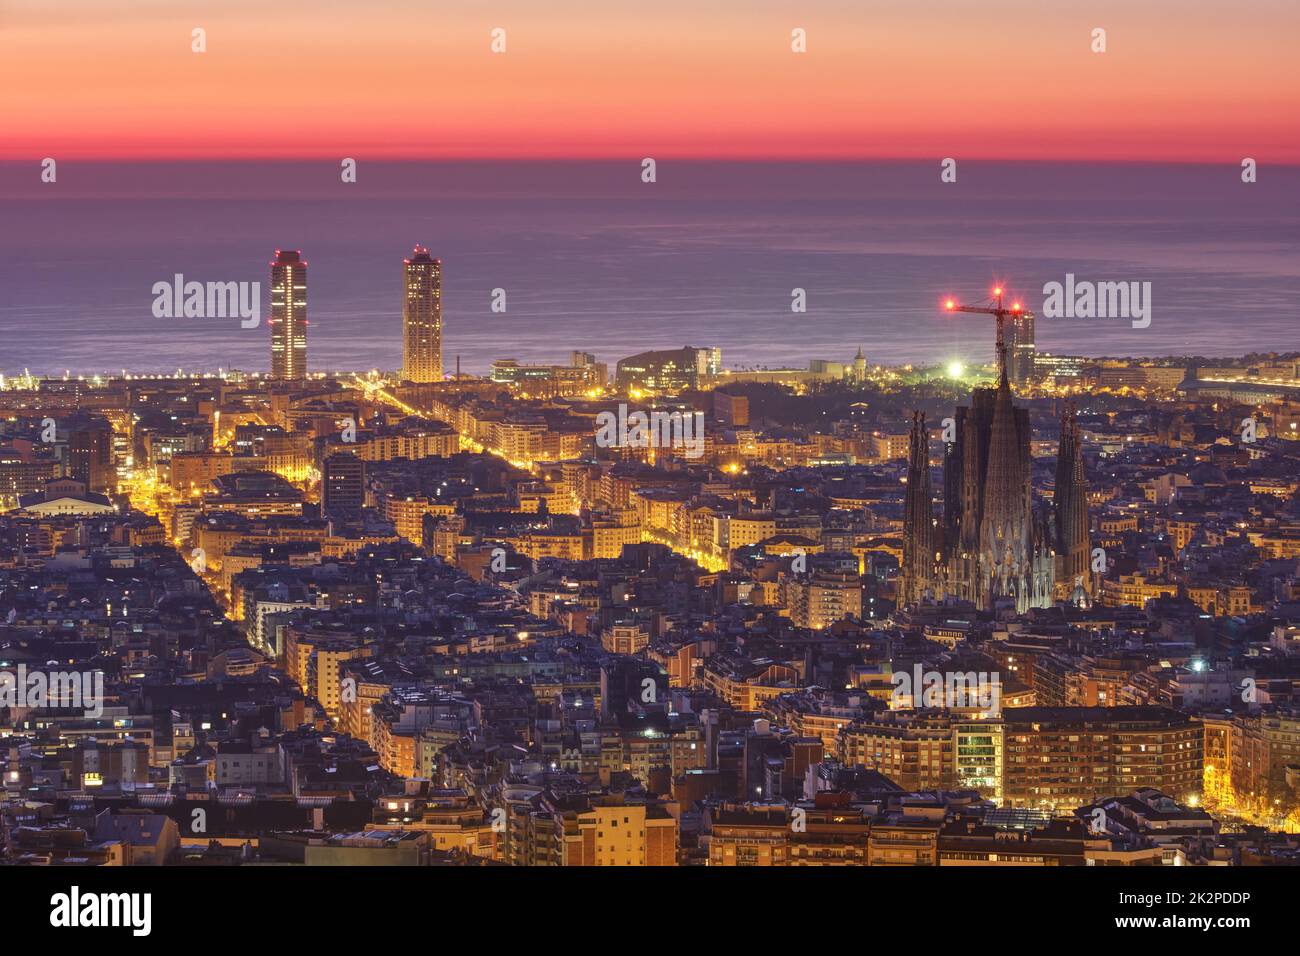 Barcelona with the famous Sagrada Familia before sunrise Stock Photo